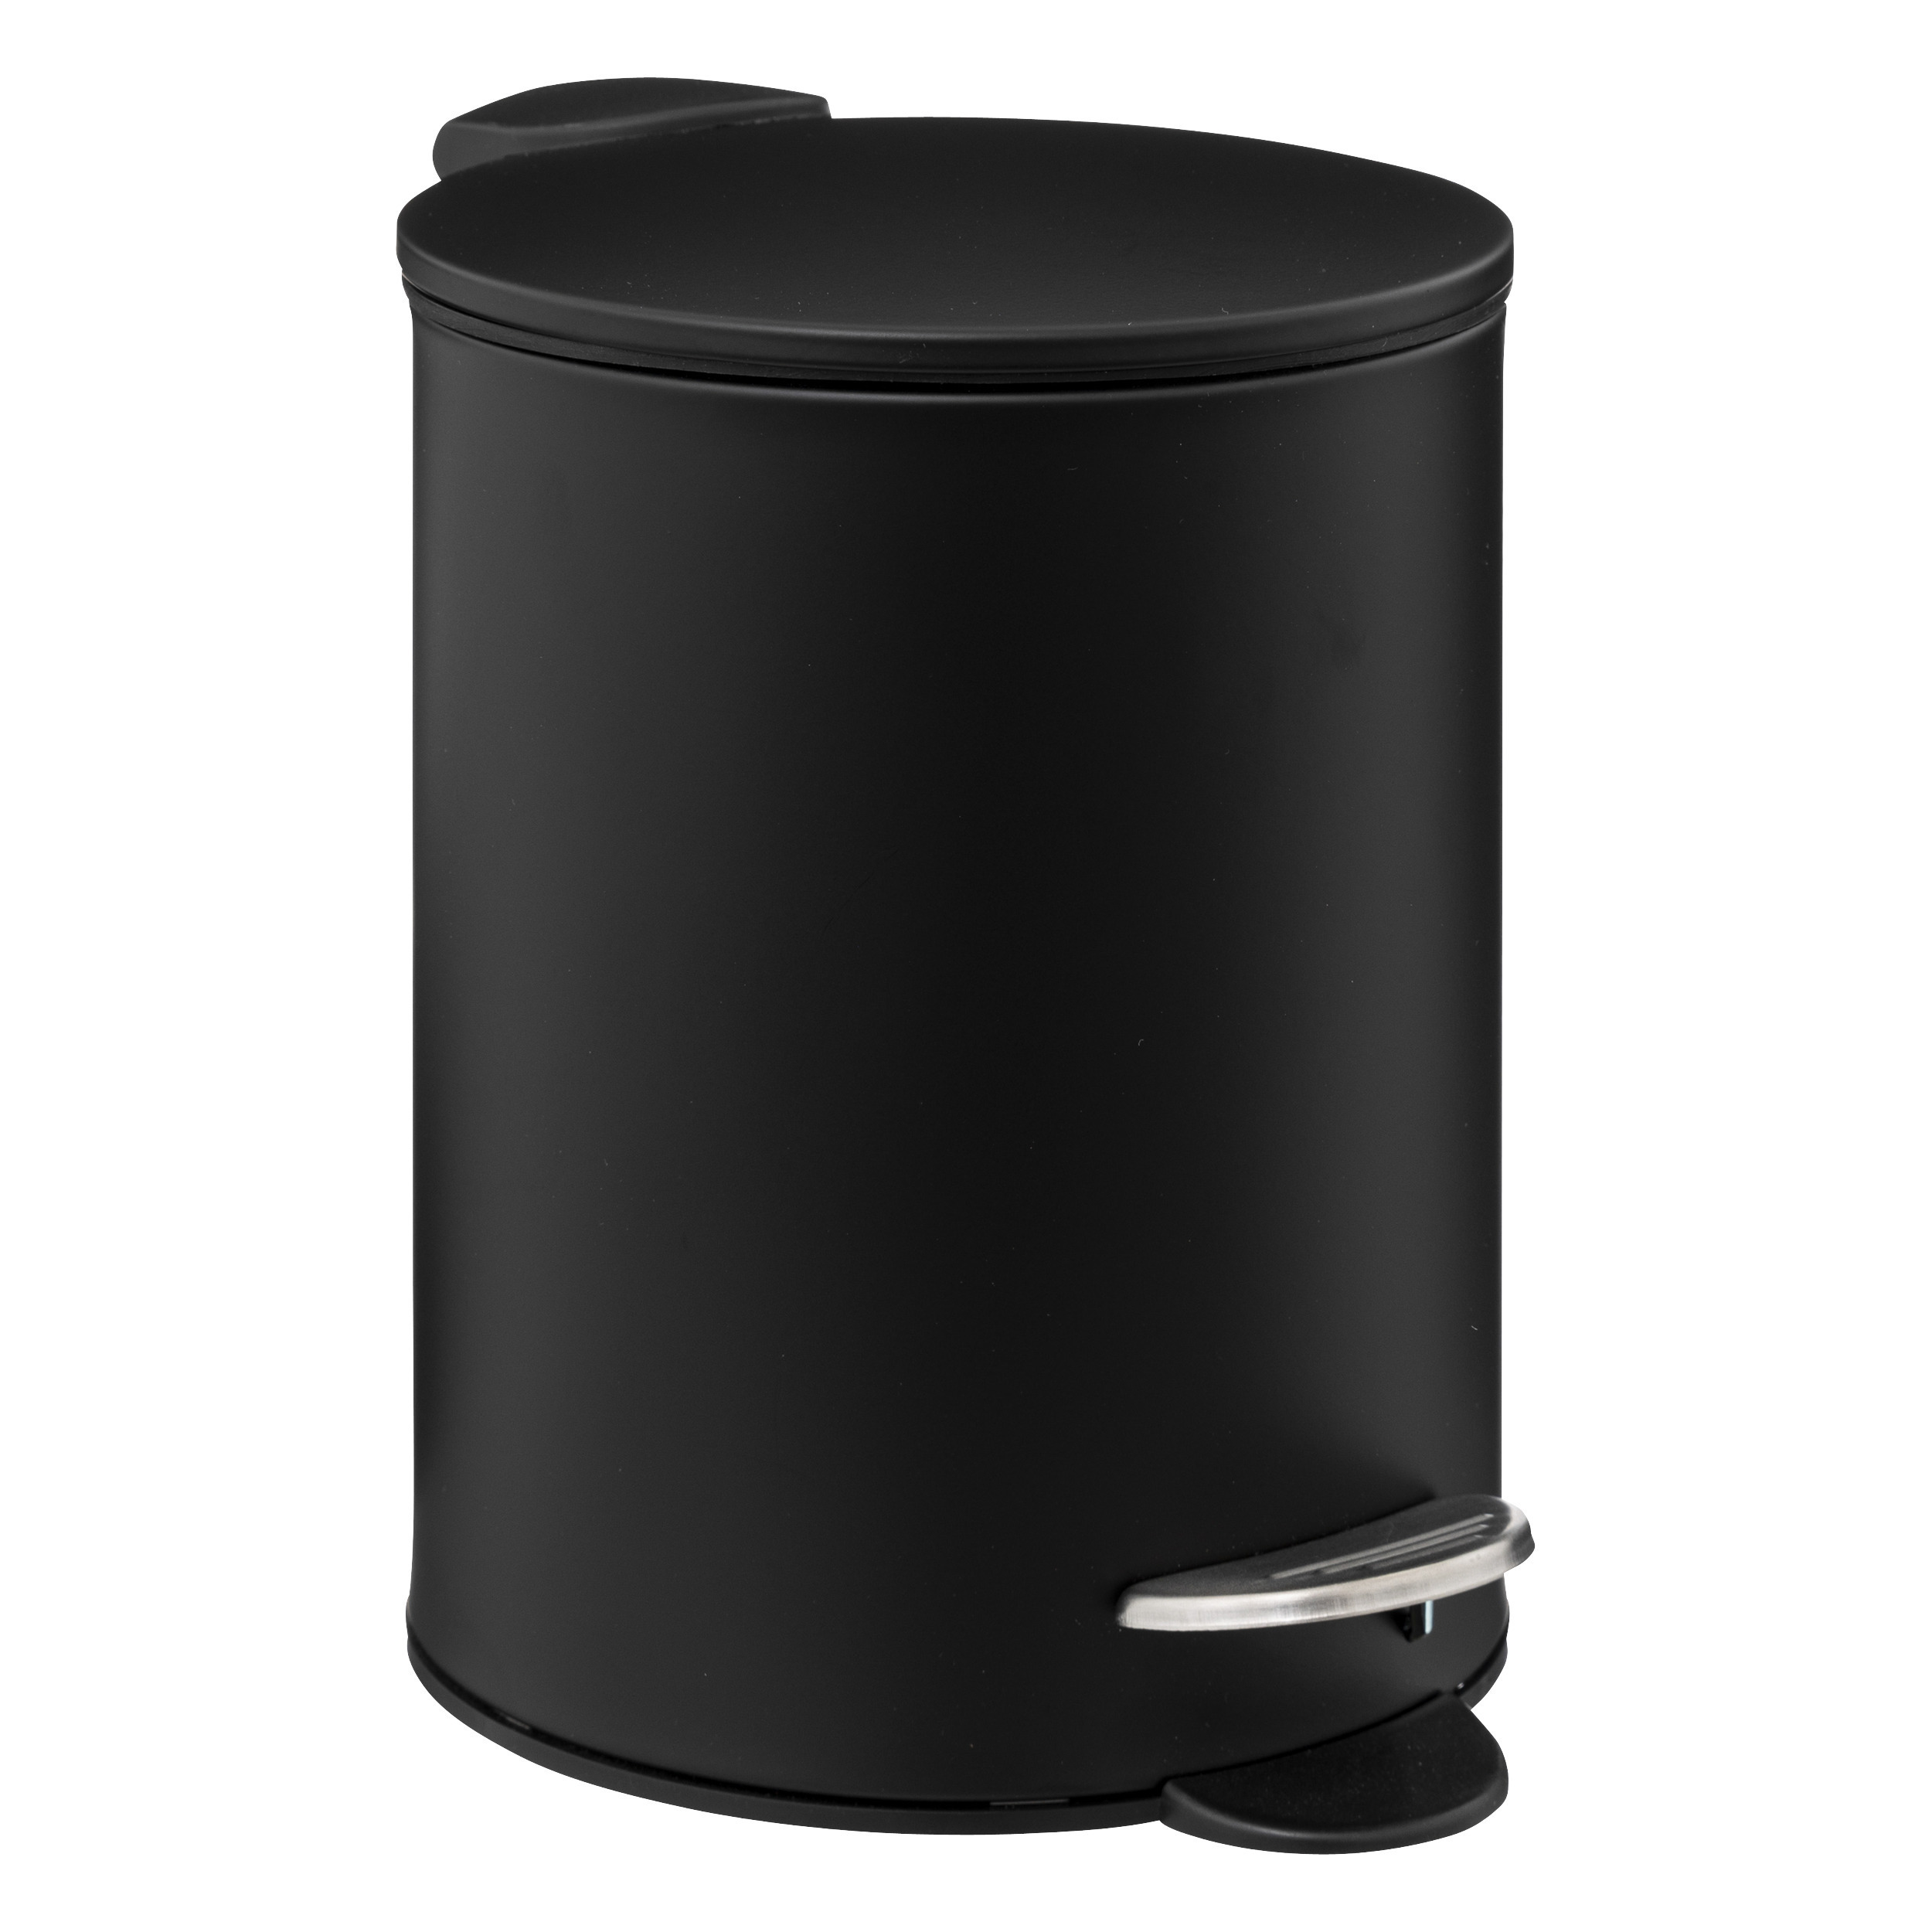 Prullenbak-pedaalemmer zwart metaal 3 liter 17 x 23 cm